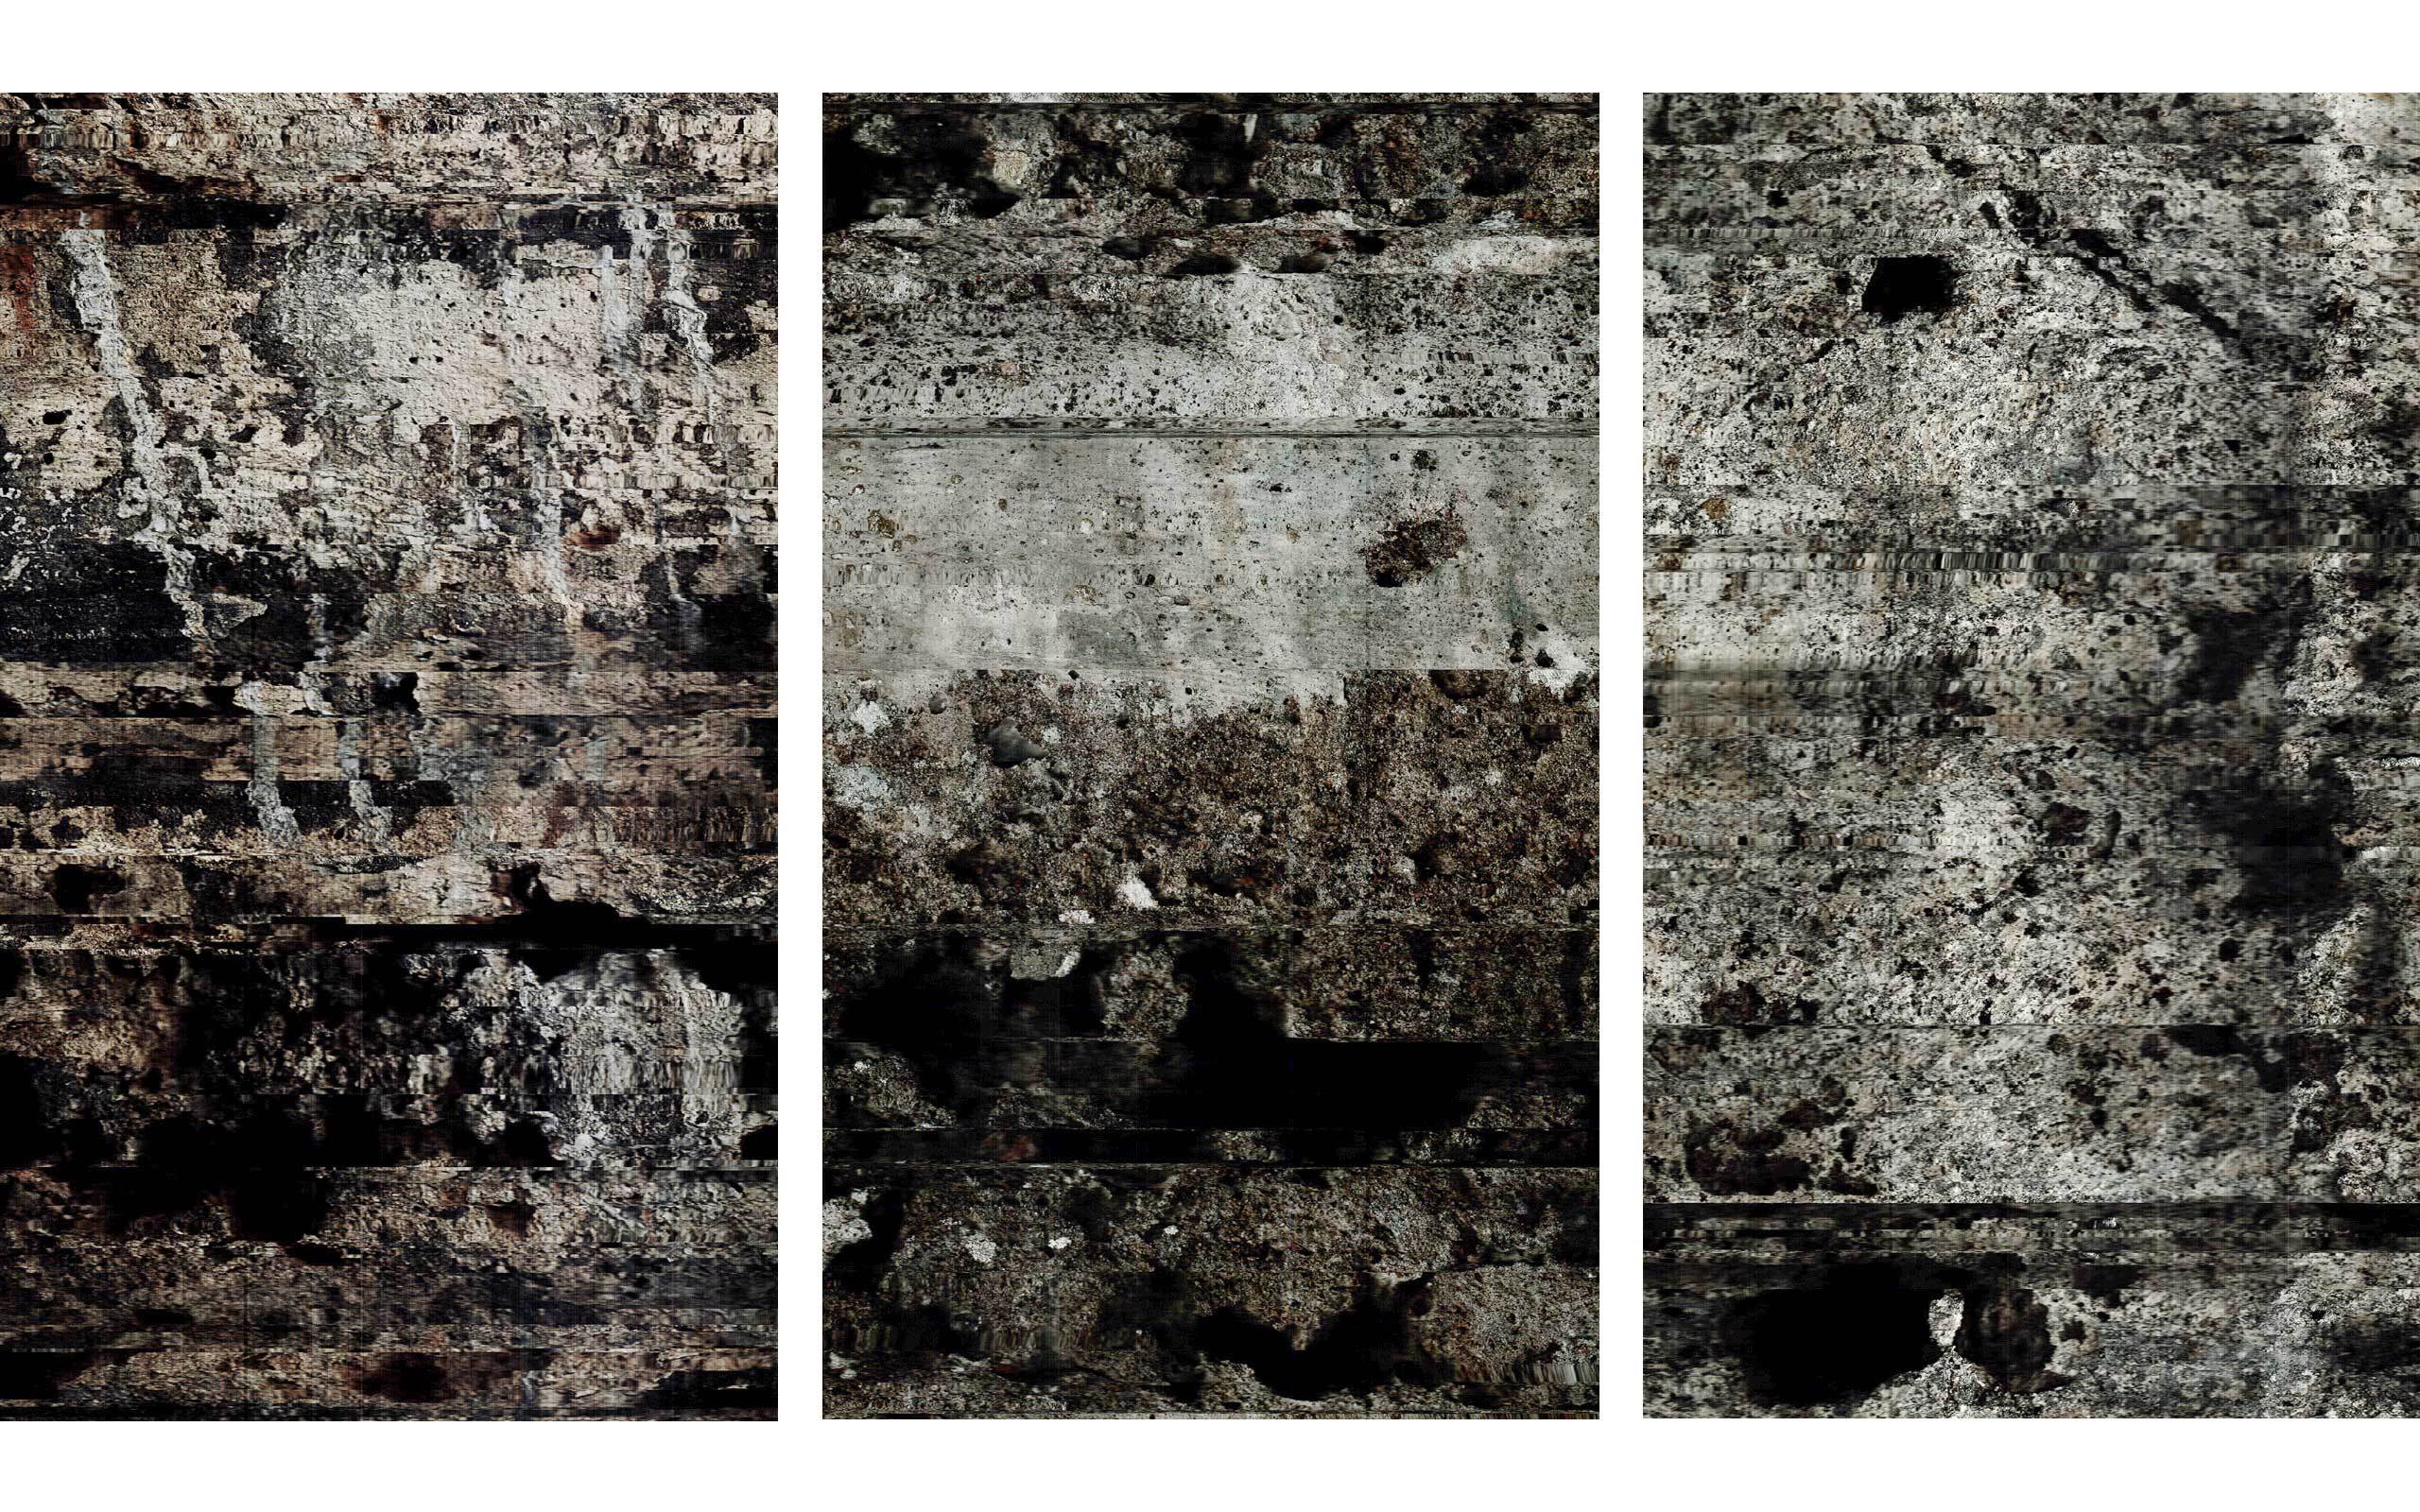 03 John Skoog limited-release art edition (Rift 7) West Wall; (Rift 8) East Wall; (Rift 9) West Wall